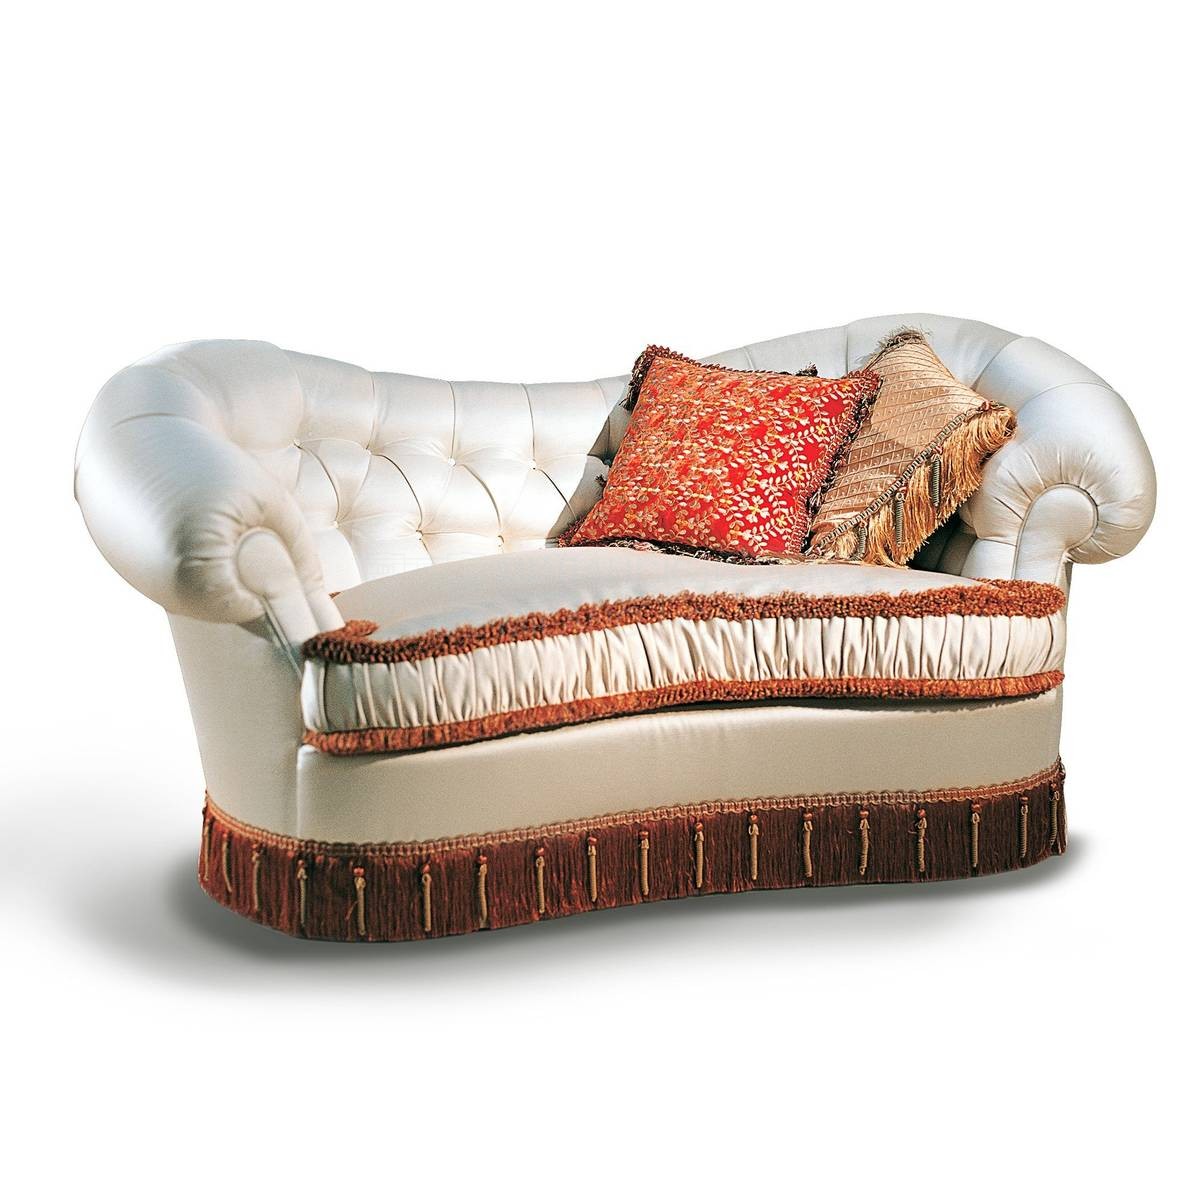 Прямой диван The Upholstery/D402.01 из Италии фабрики FRANCESCO MOLON